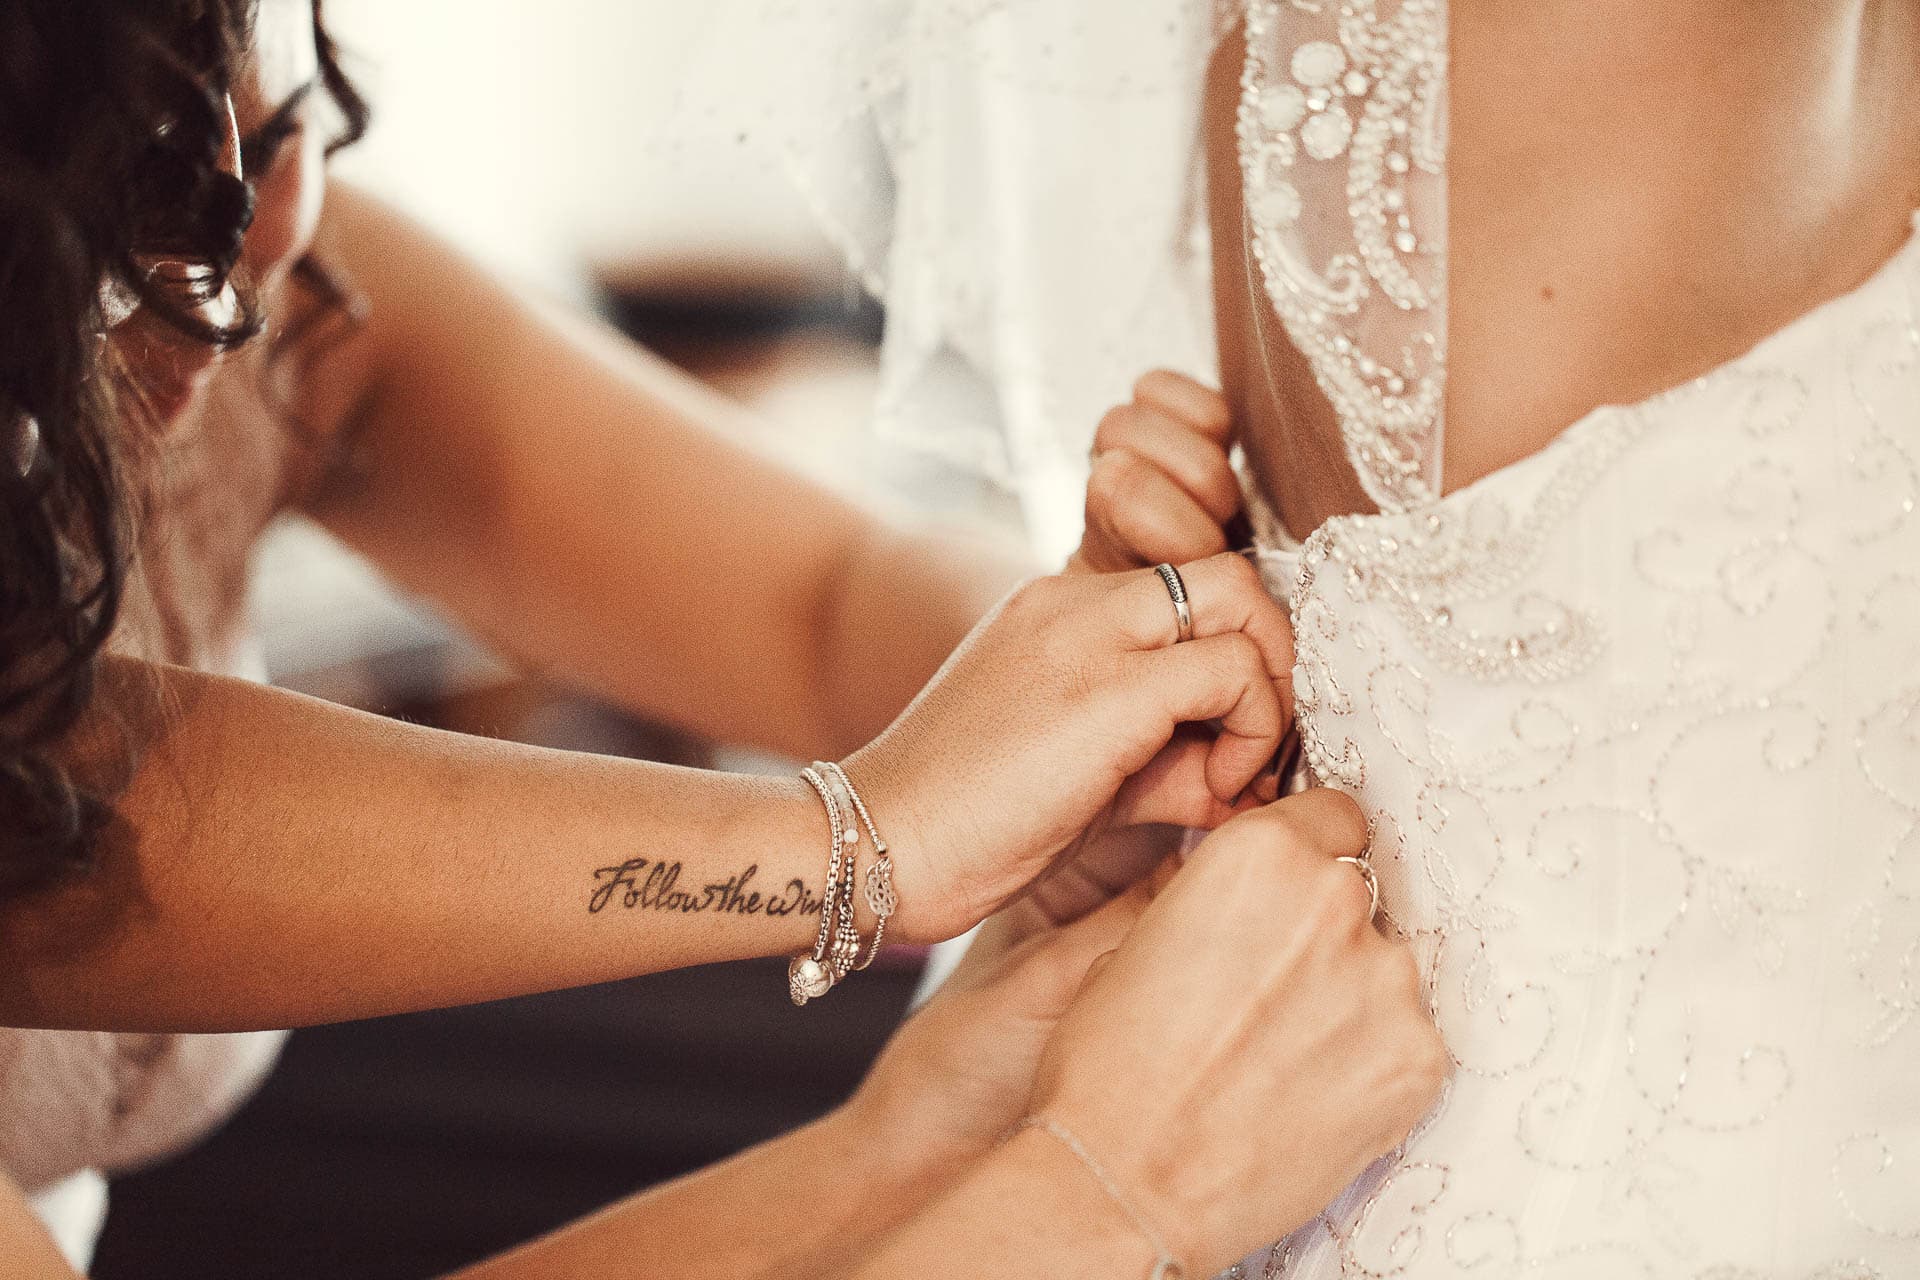 photographe mariage geneve - les demoiselles d'honneur qui ferment la robe de la mariée en gros plan sur les mains.